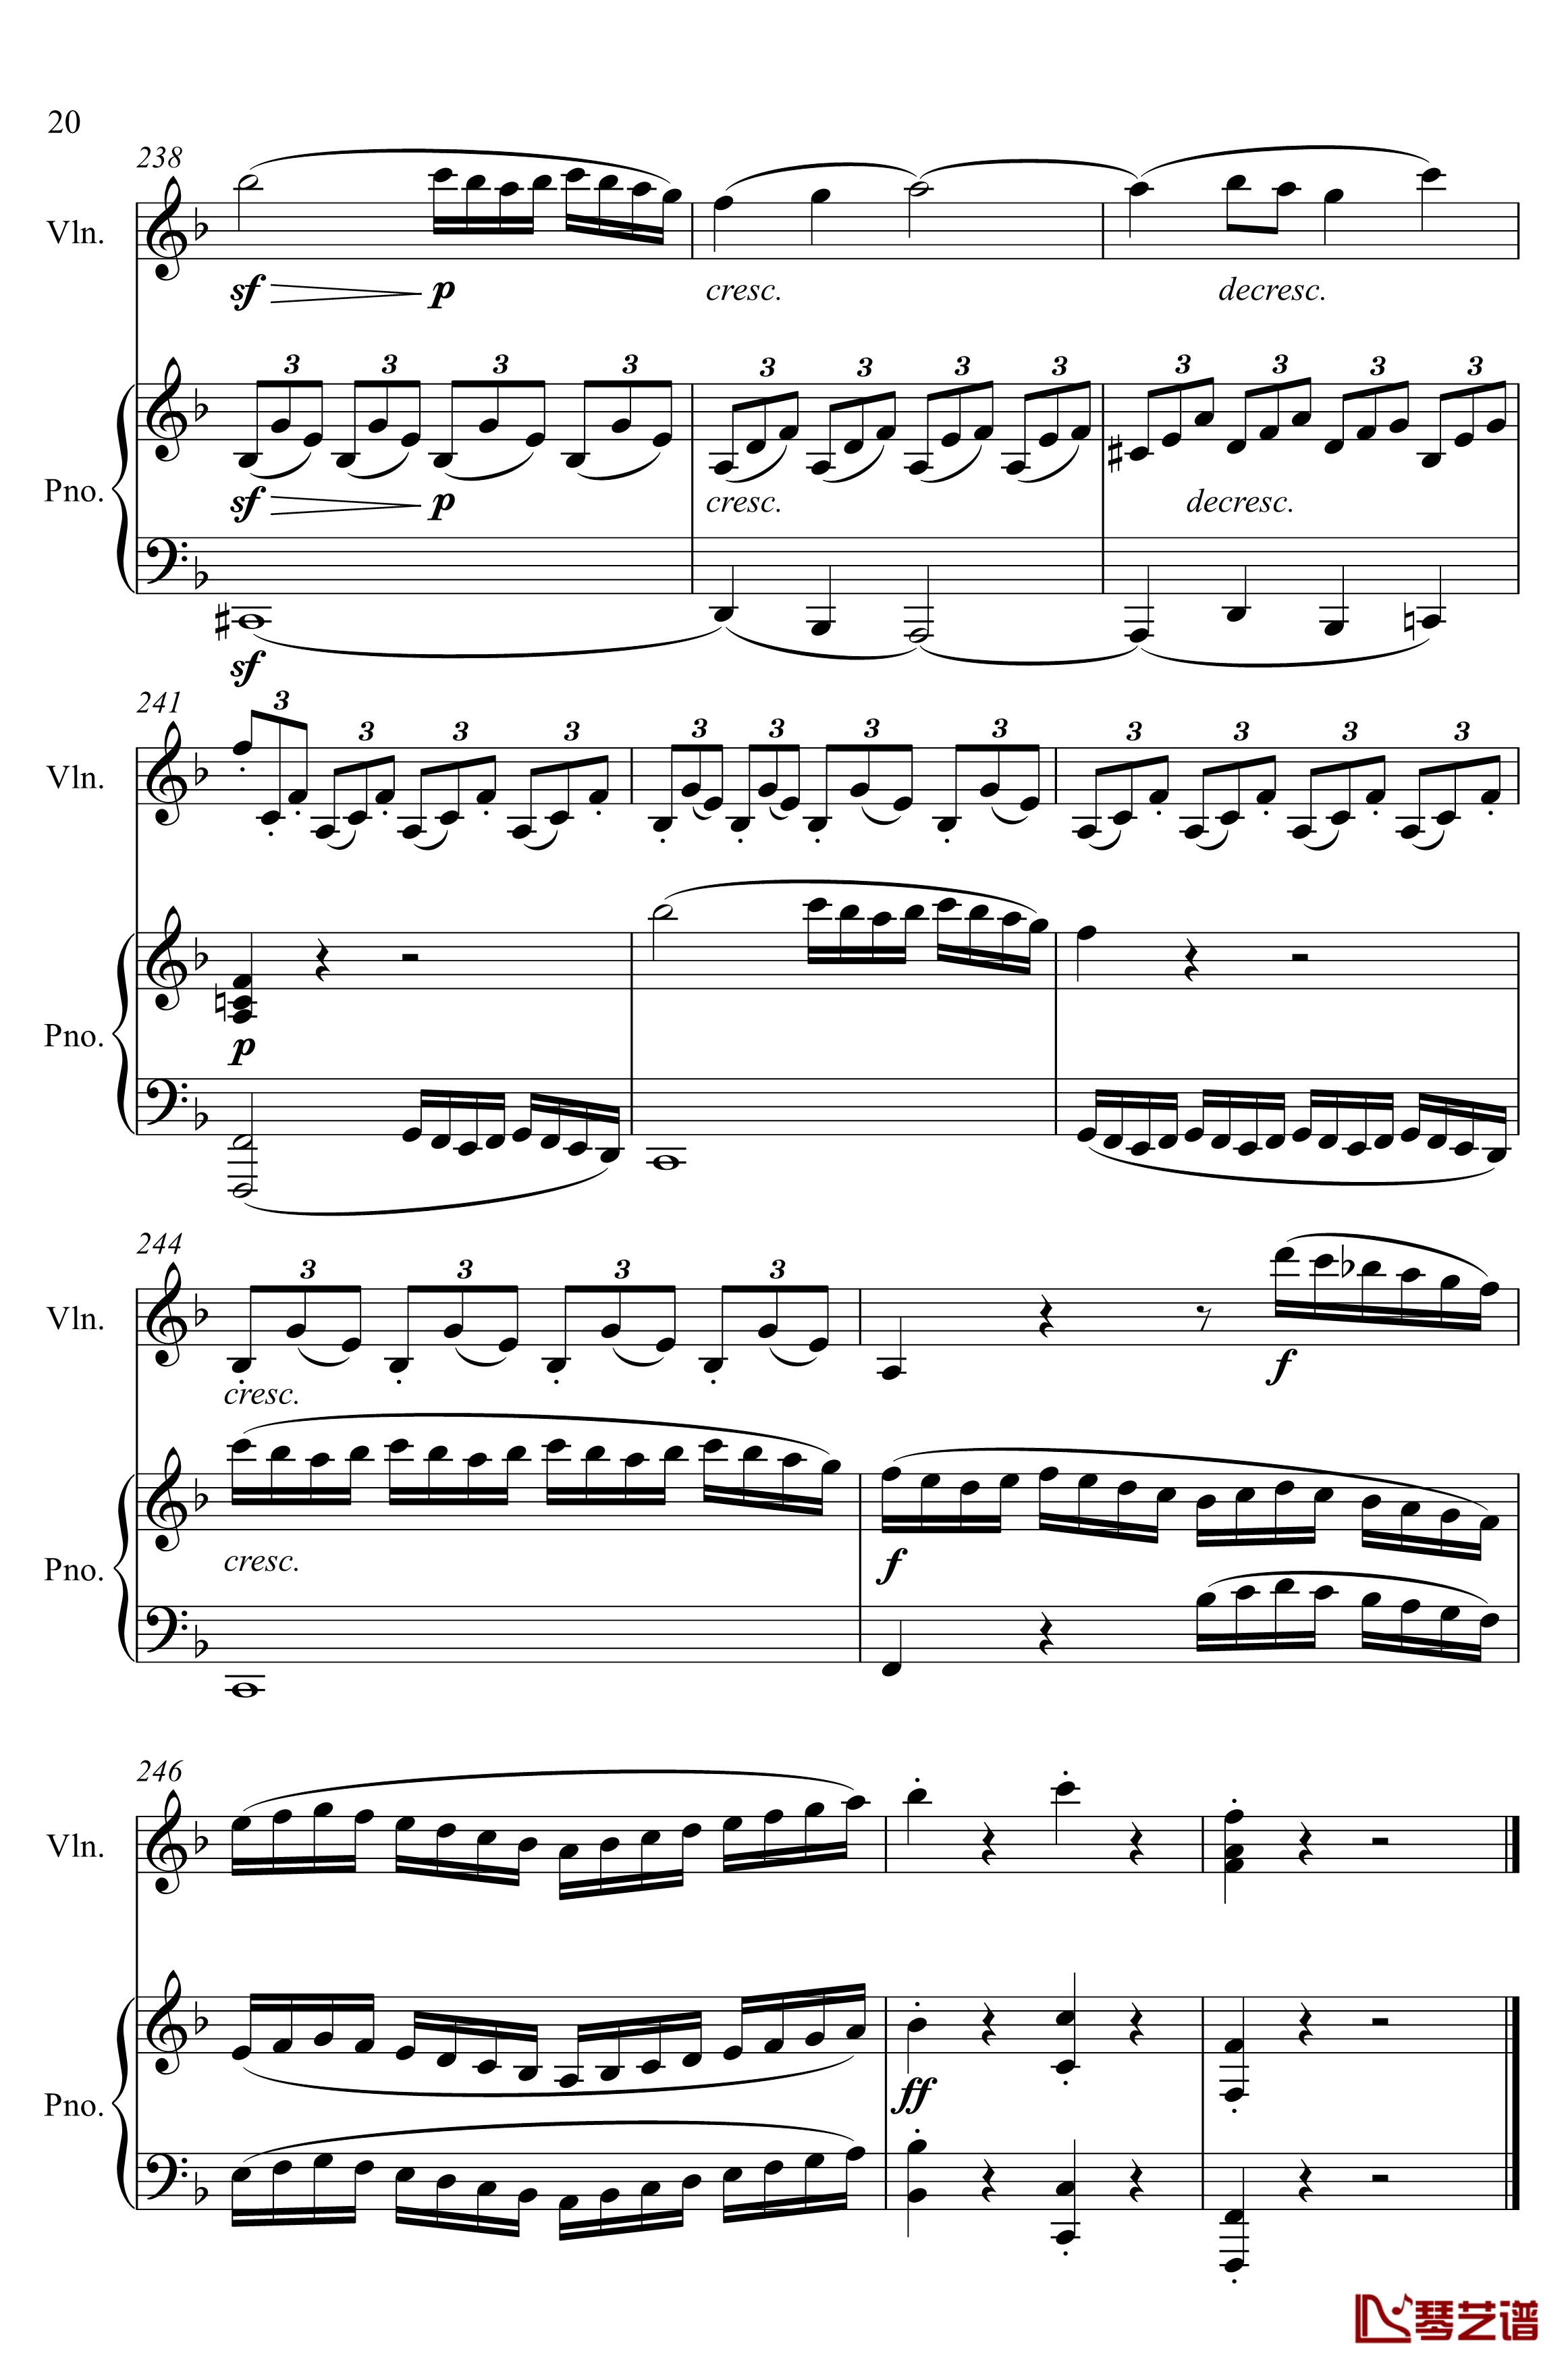 第5小提琴与钢琴奏鸣曲钢琴谱-第一乐章钢琴谱-贝多芬-beethoven20